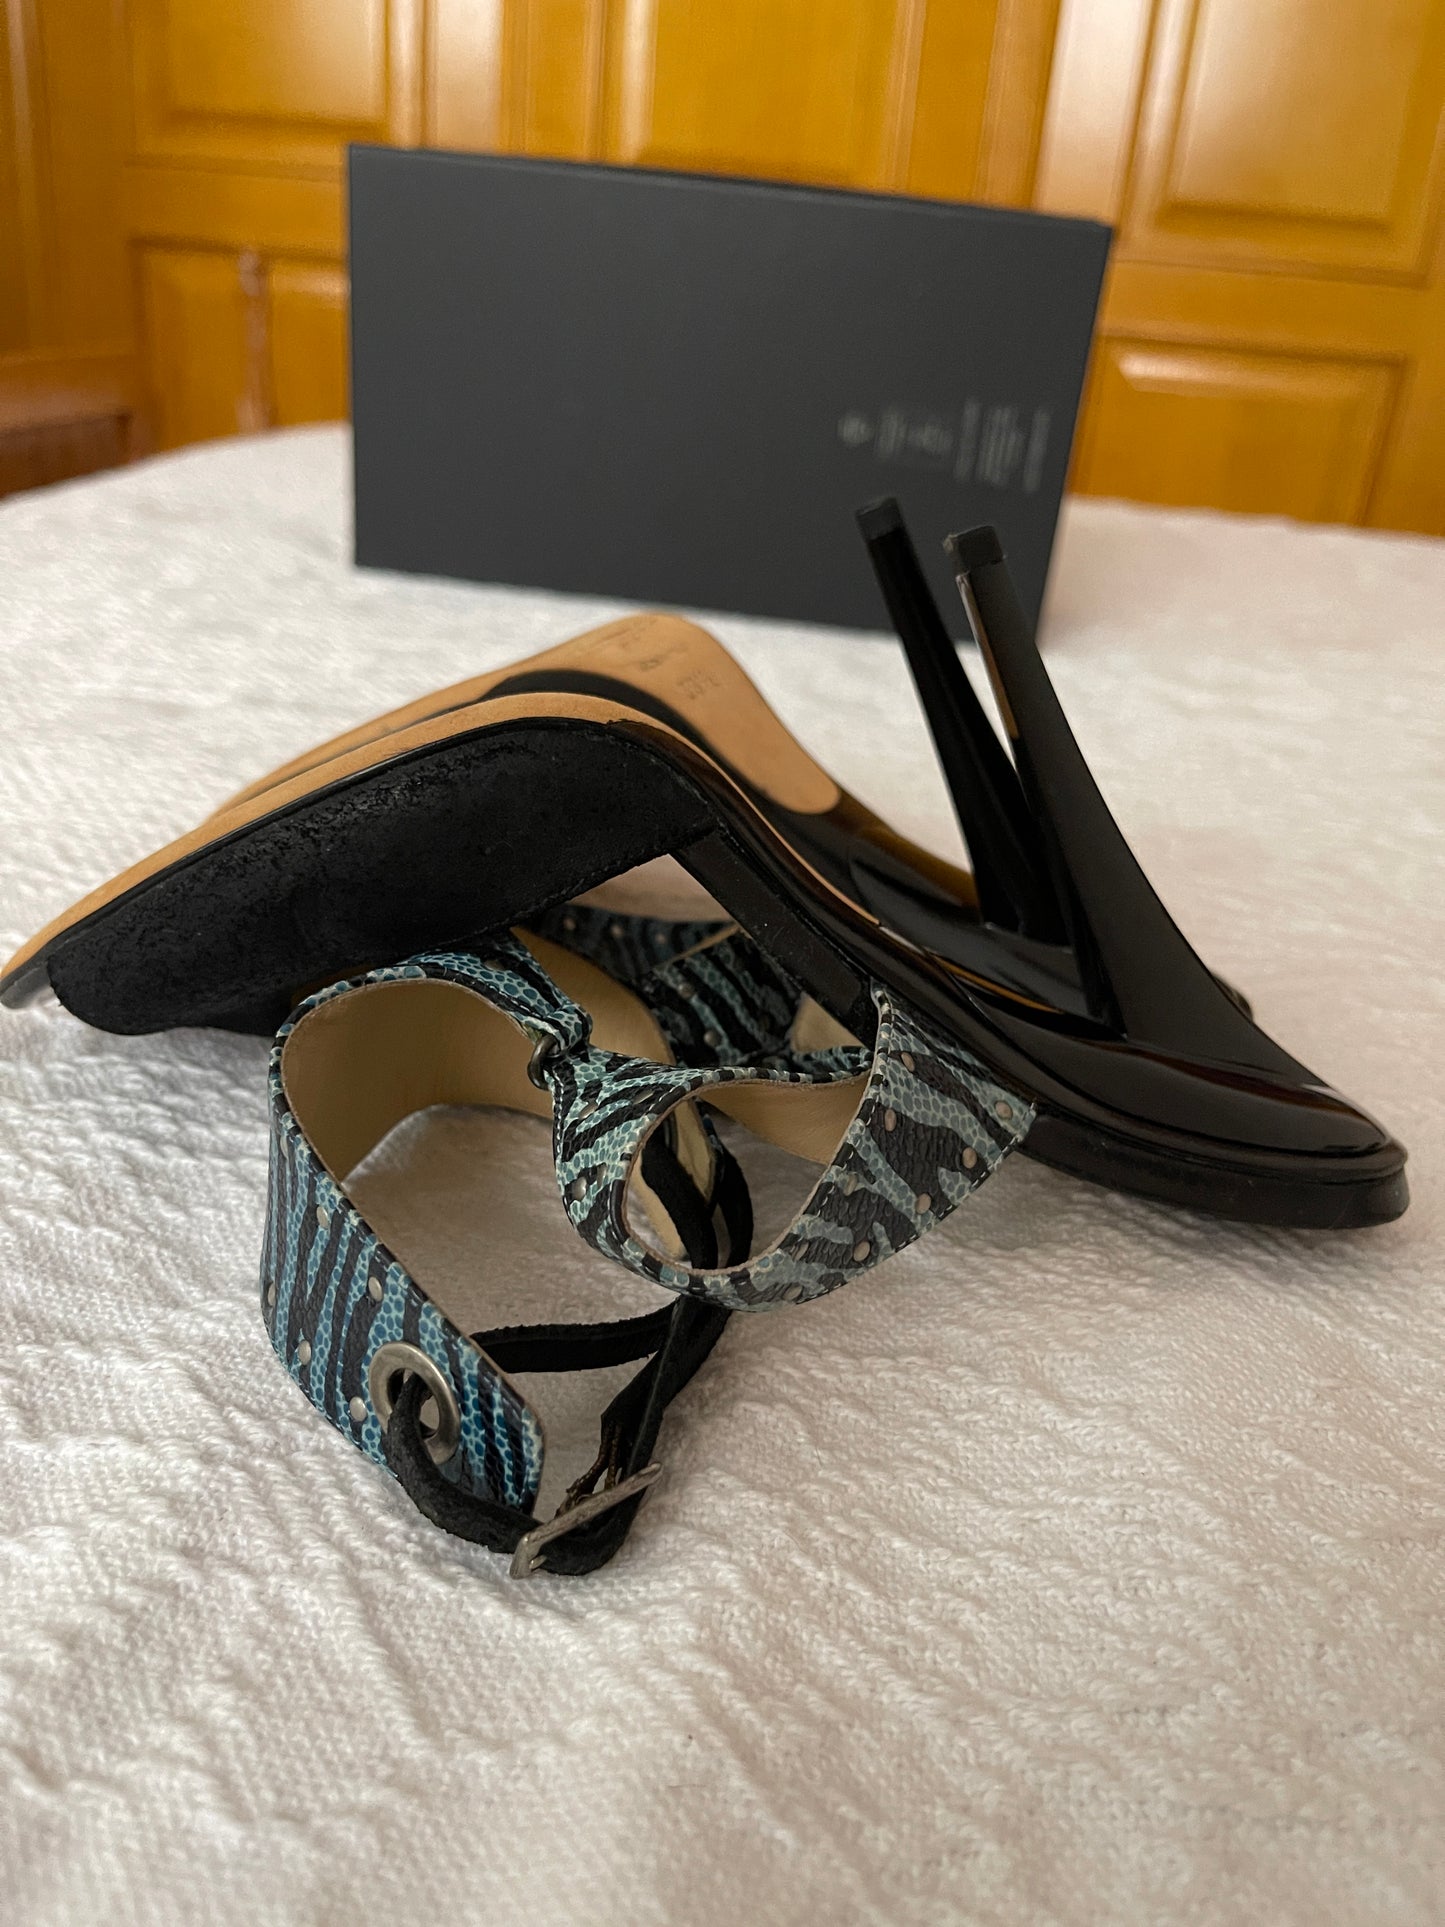 Sandale cu toc negru cu imprimeu zebra albastru marimea 39.5